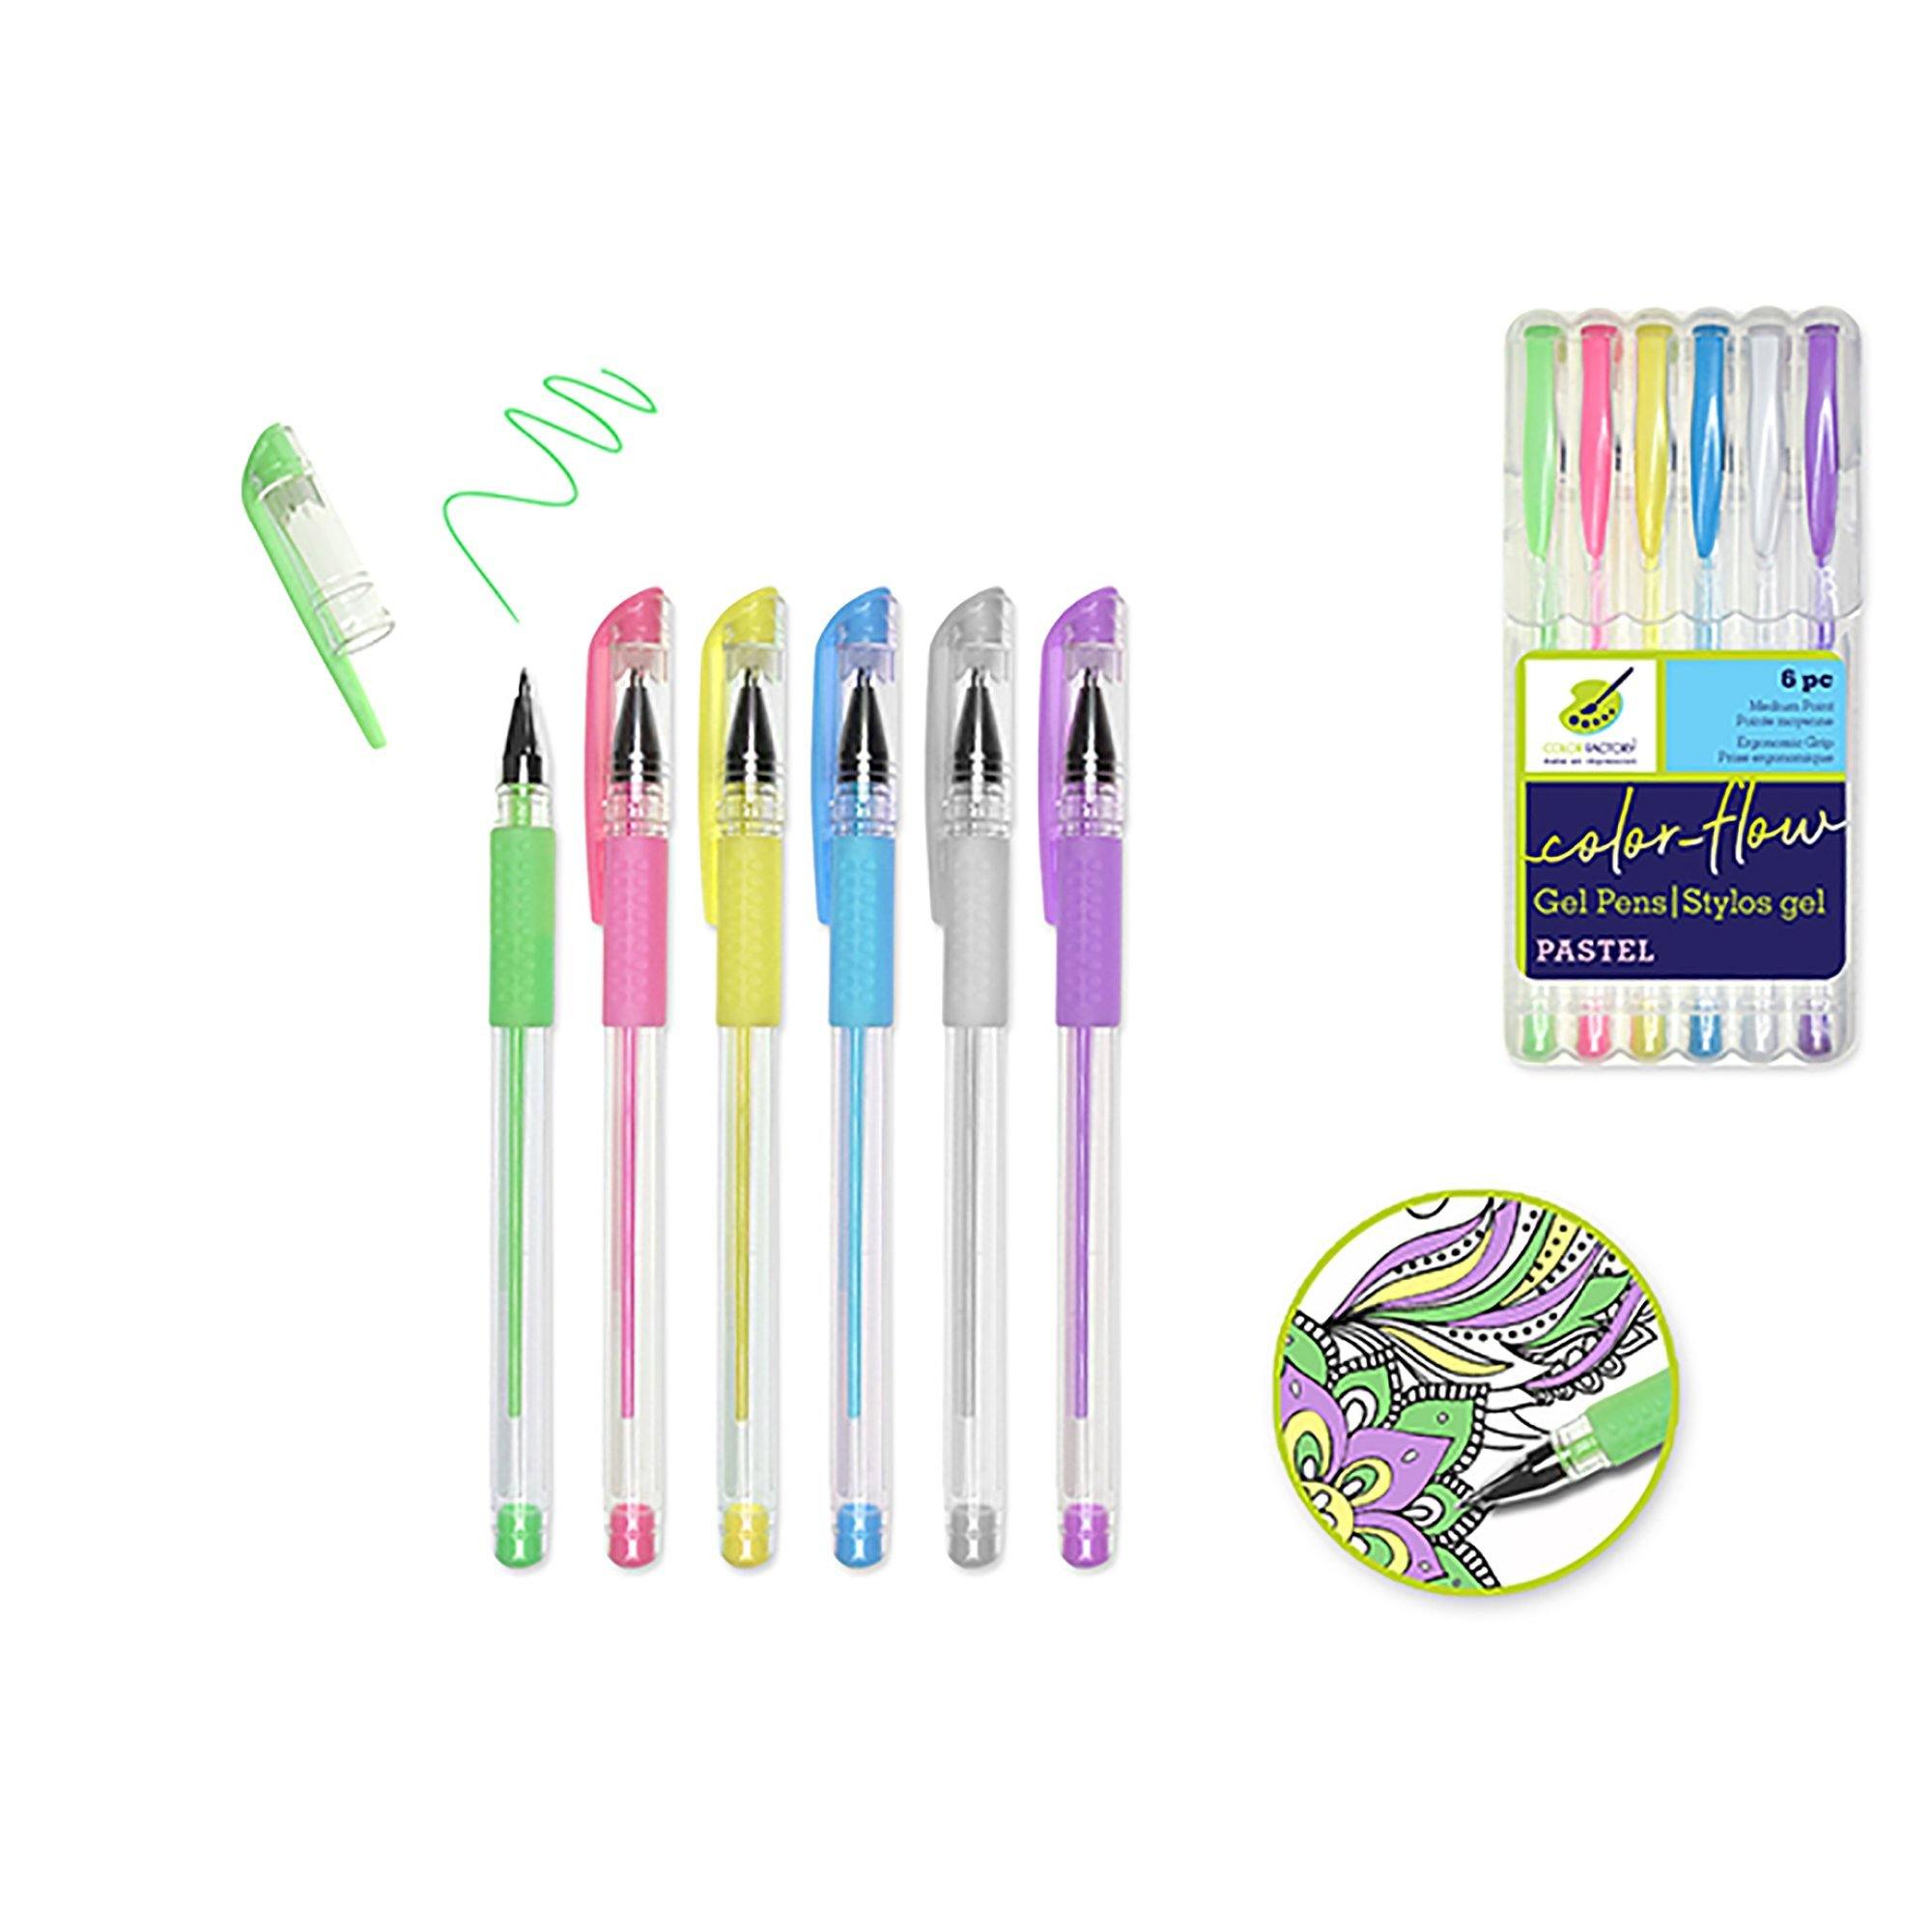 Pastels Color Factory Tool: Color-Flow Gel Pen 'Living In Color' Premium - Dollar Max Dépôt